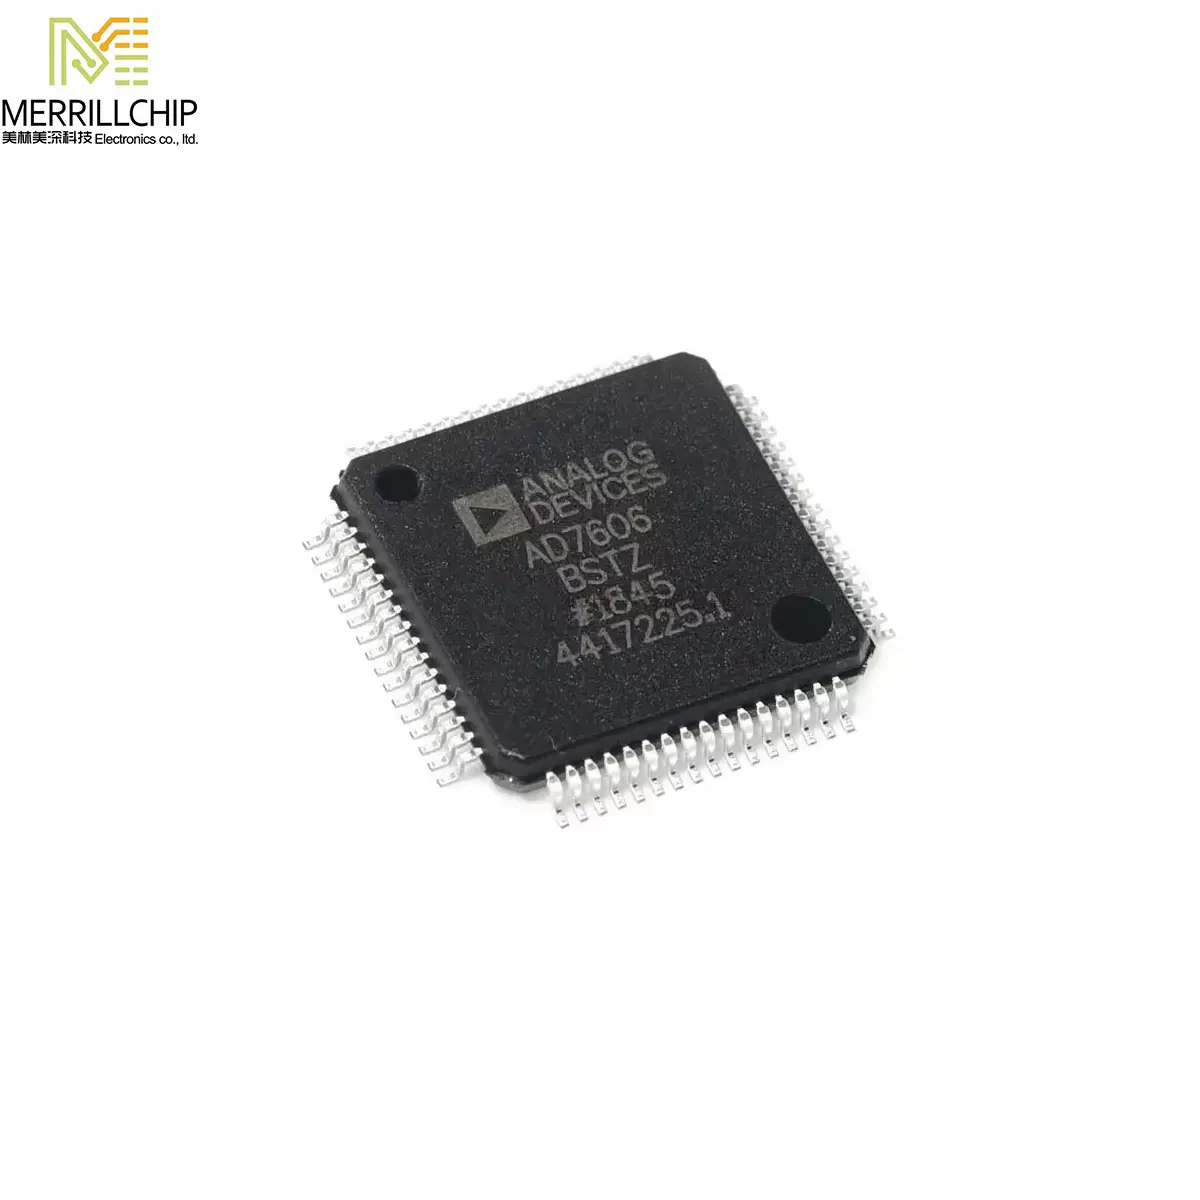 メリルチップ集積回路AD7606BSTZ電子部品オリジナル新品在庫あり